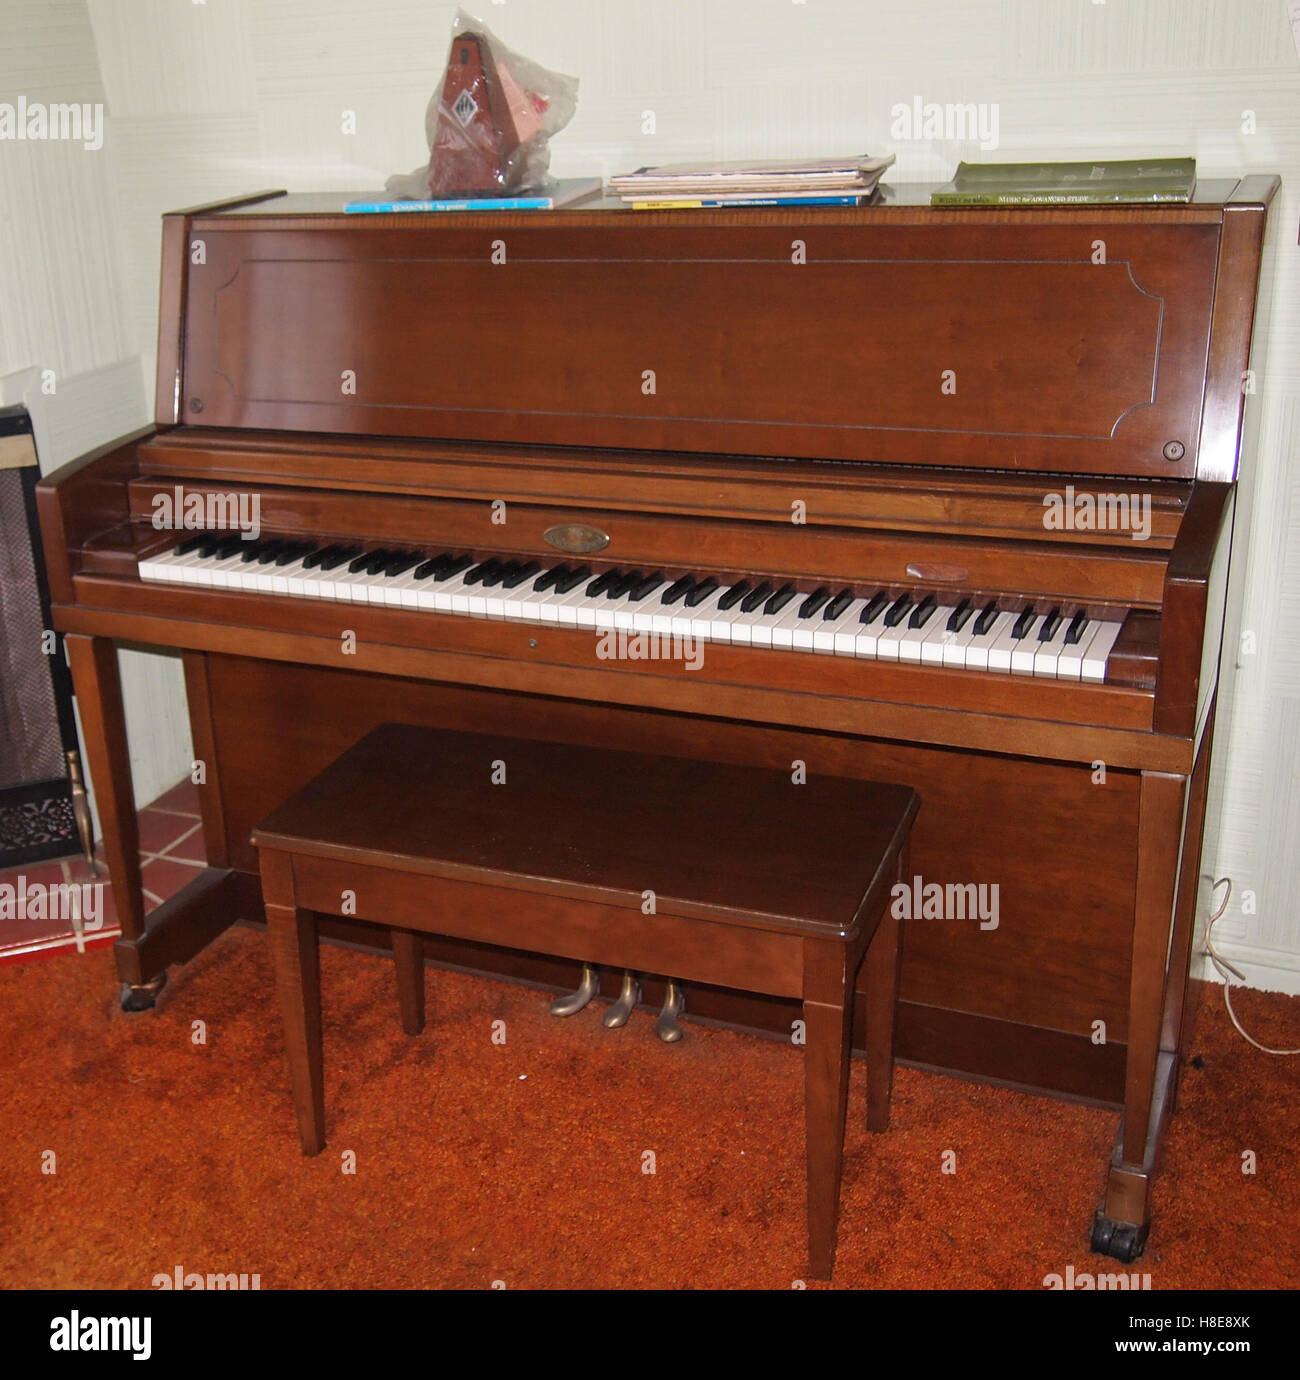 Wurlitzer upright piano Stock Photo